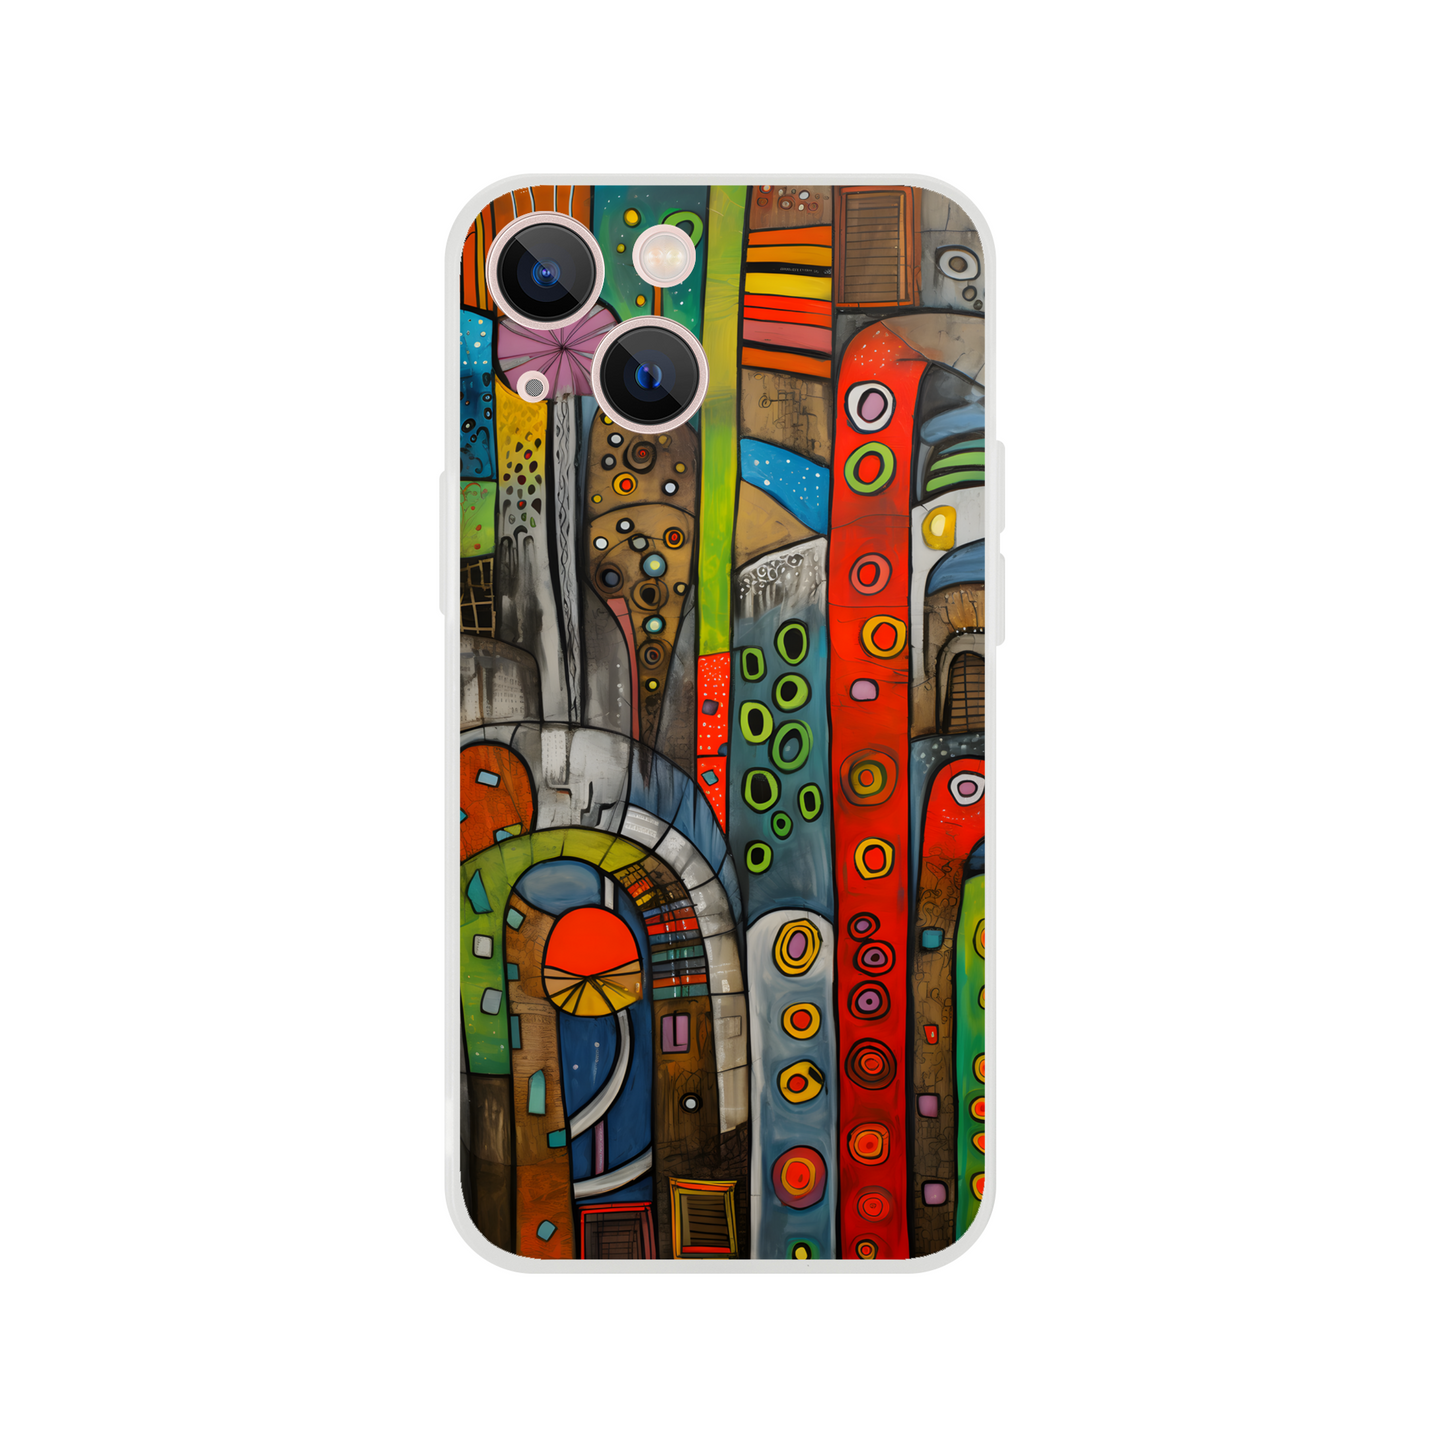 Hundertwasser style - Flexi case